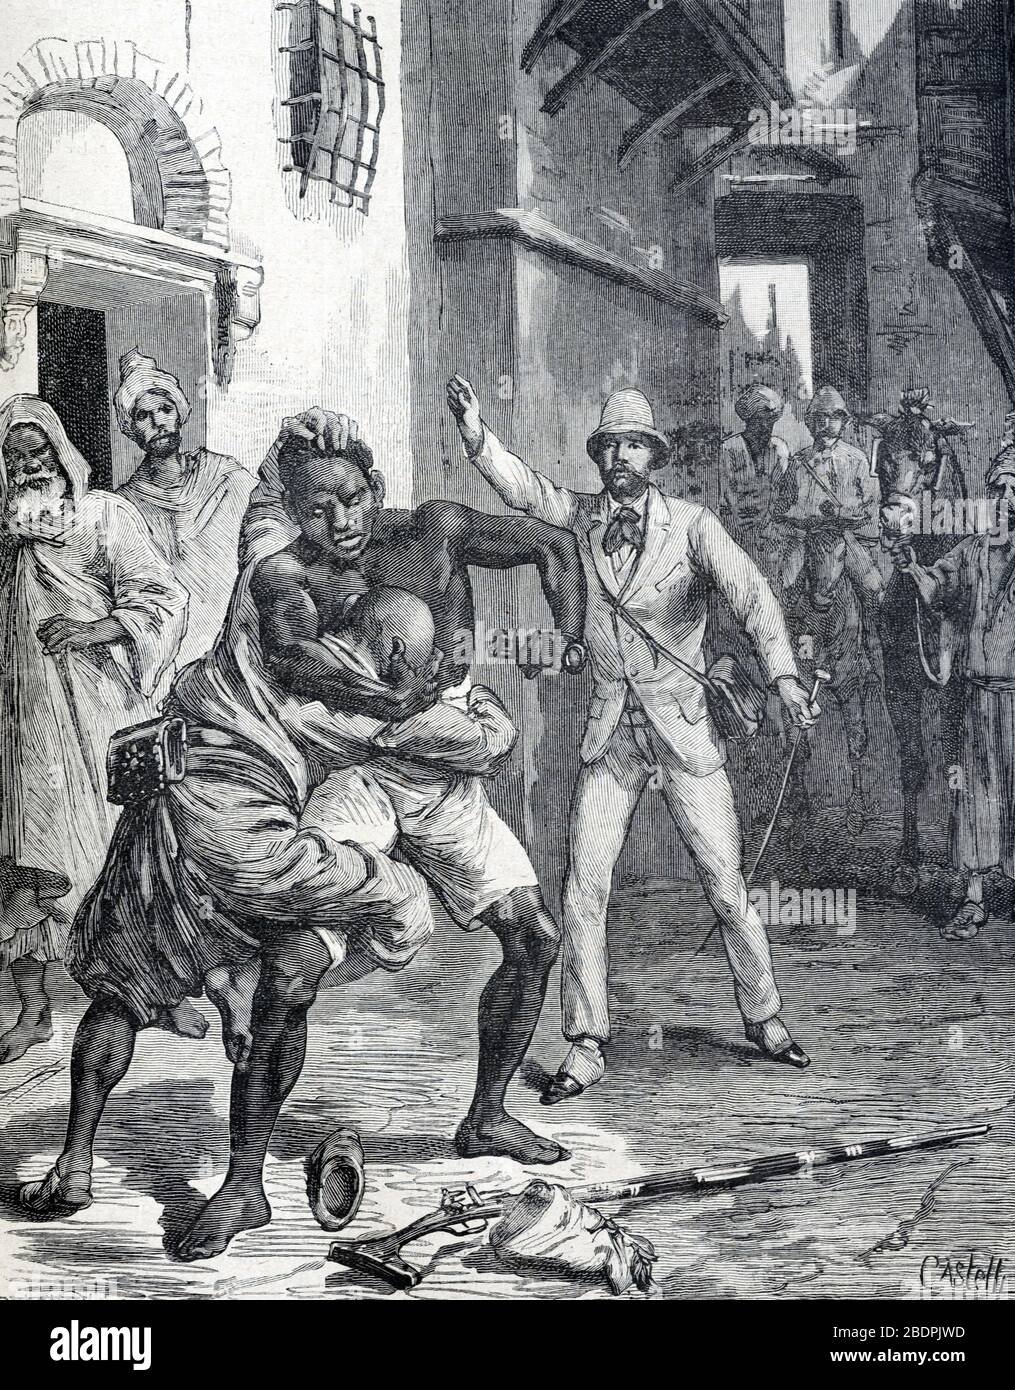 Lutte de rue ou bagarre de rue entre l'homme noir africain et marocain au Maroc. Vintage ou ancienne illustration ou Gravure 1866 Banque D'Images